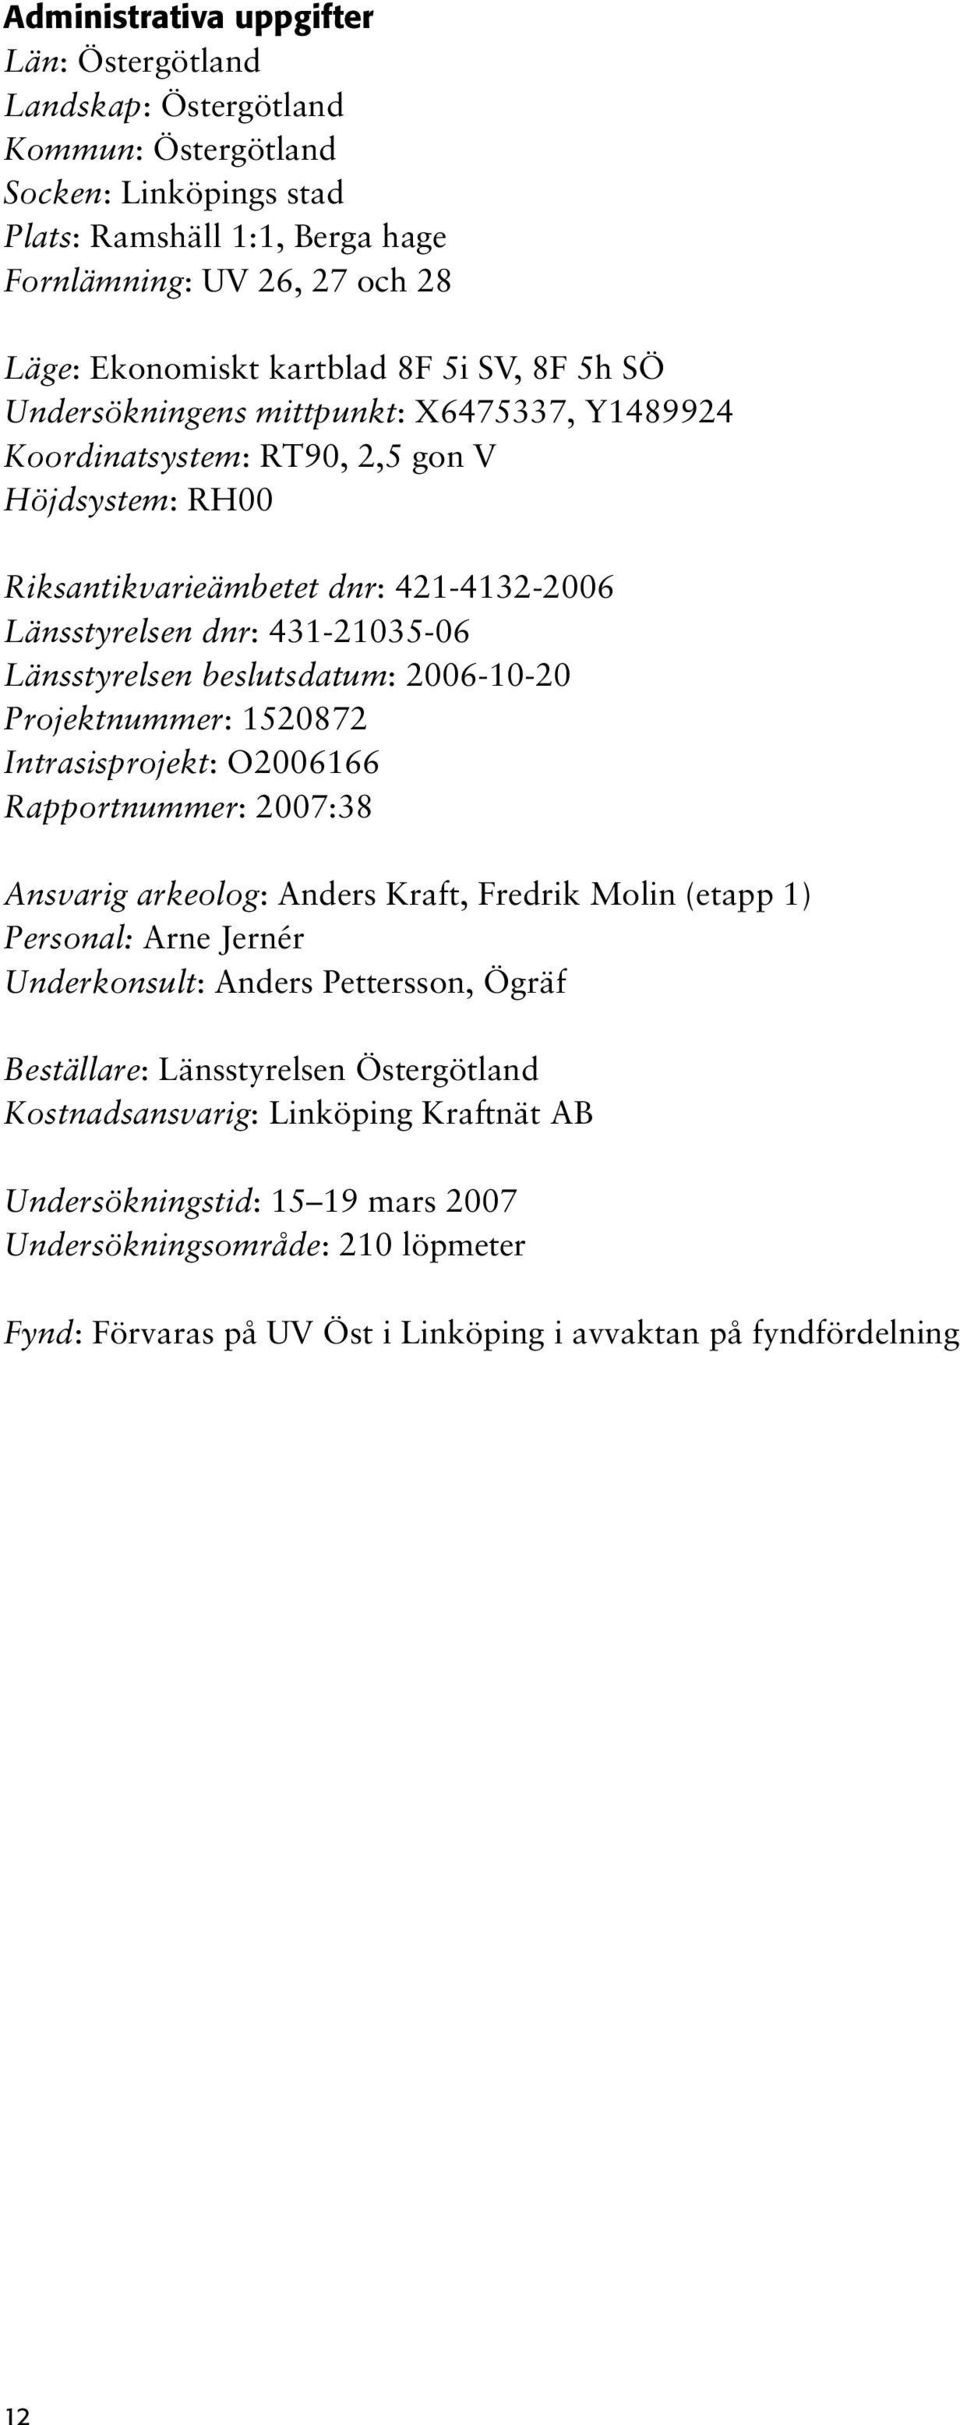 Länsstyrelsen beslutsdatum: 2006-10-20 Projektnummer: 1520872 Intrasisprojekt: O2006166 Rapportnummer: 2007:38 Ansvarig arkeolog: Anders Kraft, Fredrik Molin (etapp 1) Personal: Arne Jernér